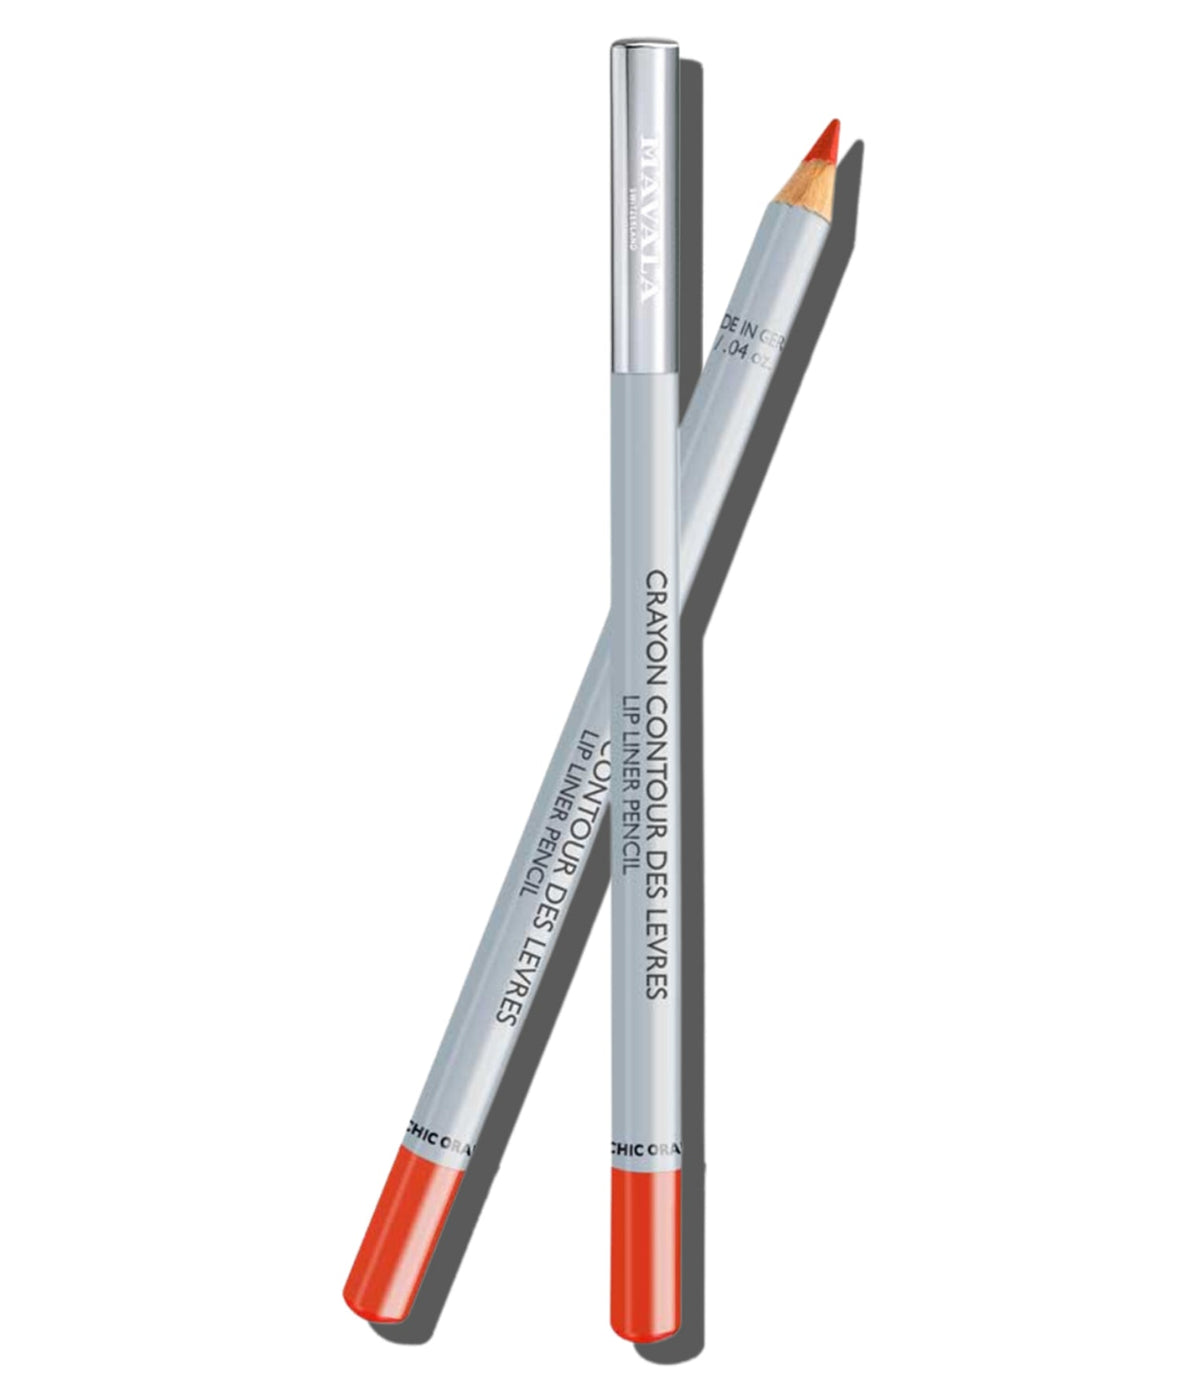 Lip Liner Pencil - Chic Orange 1.4g